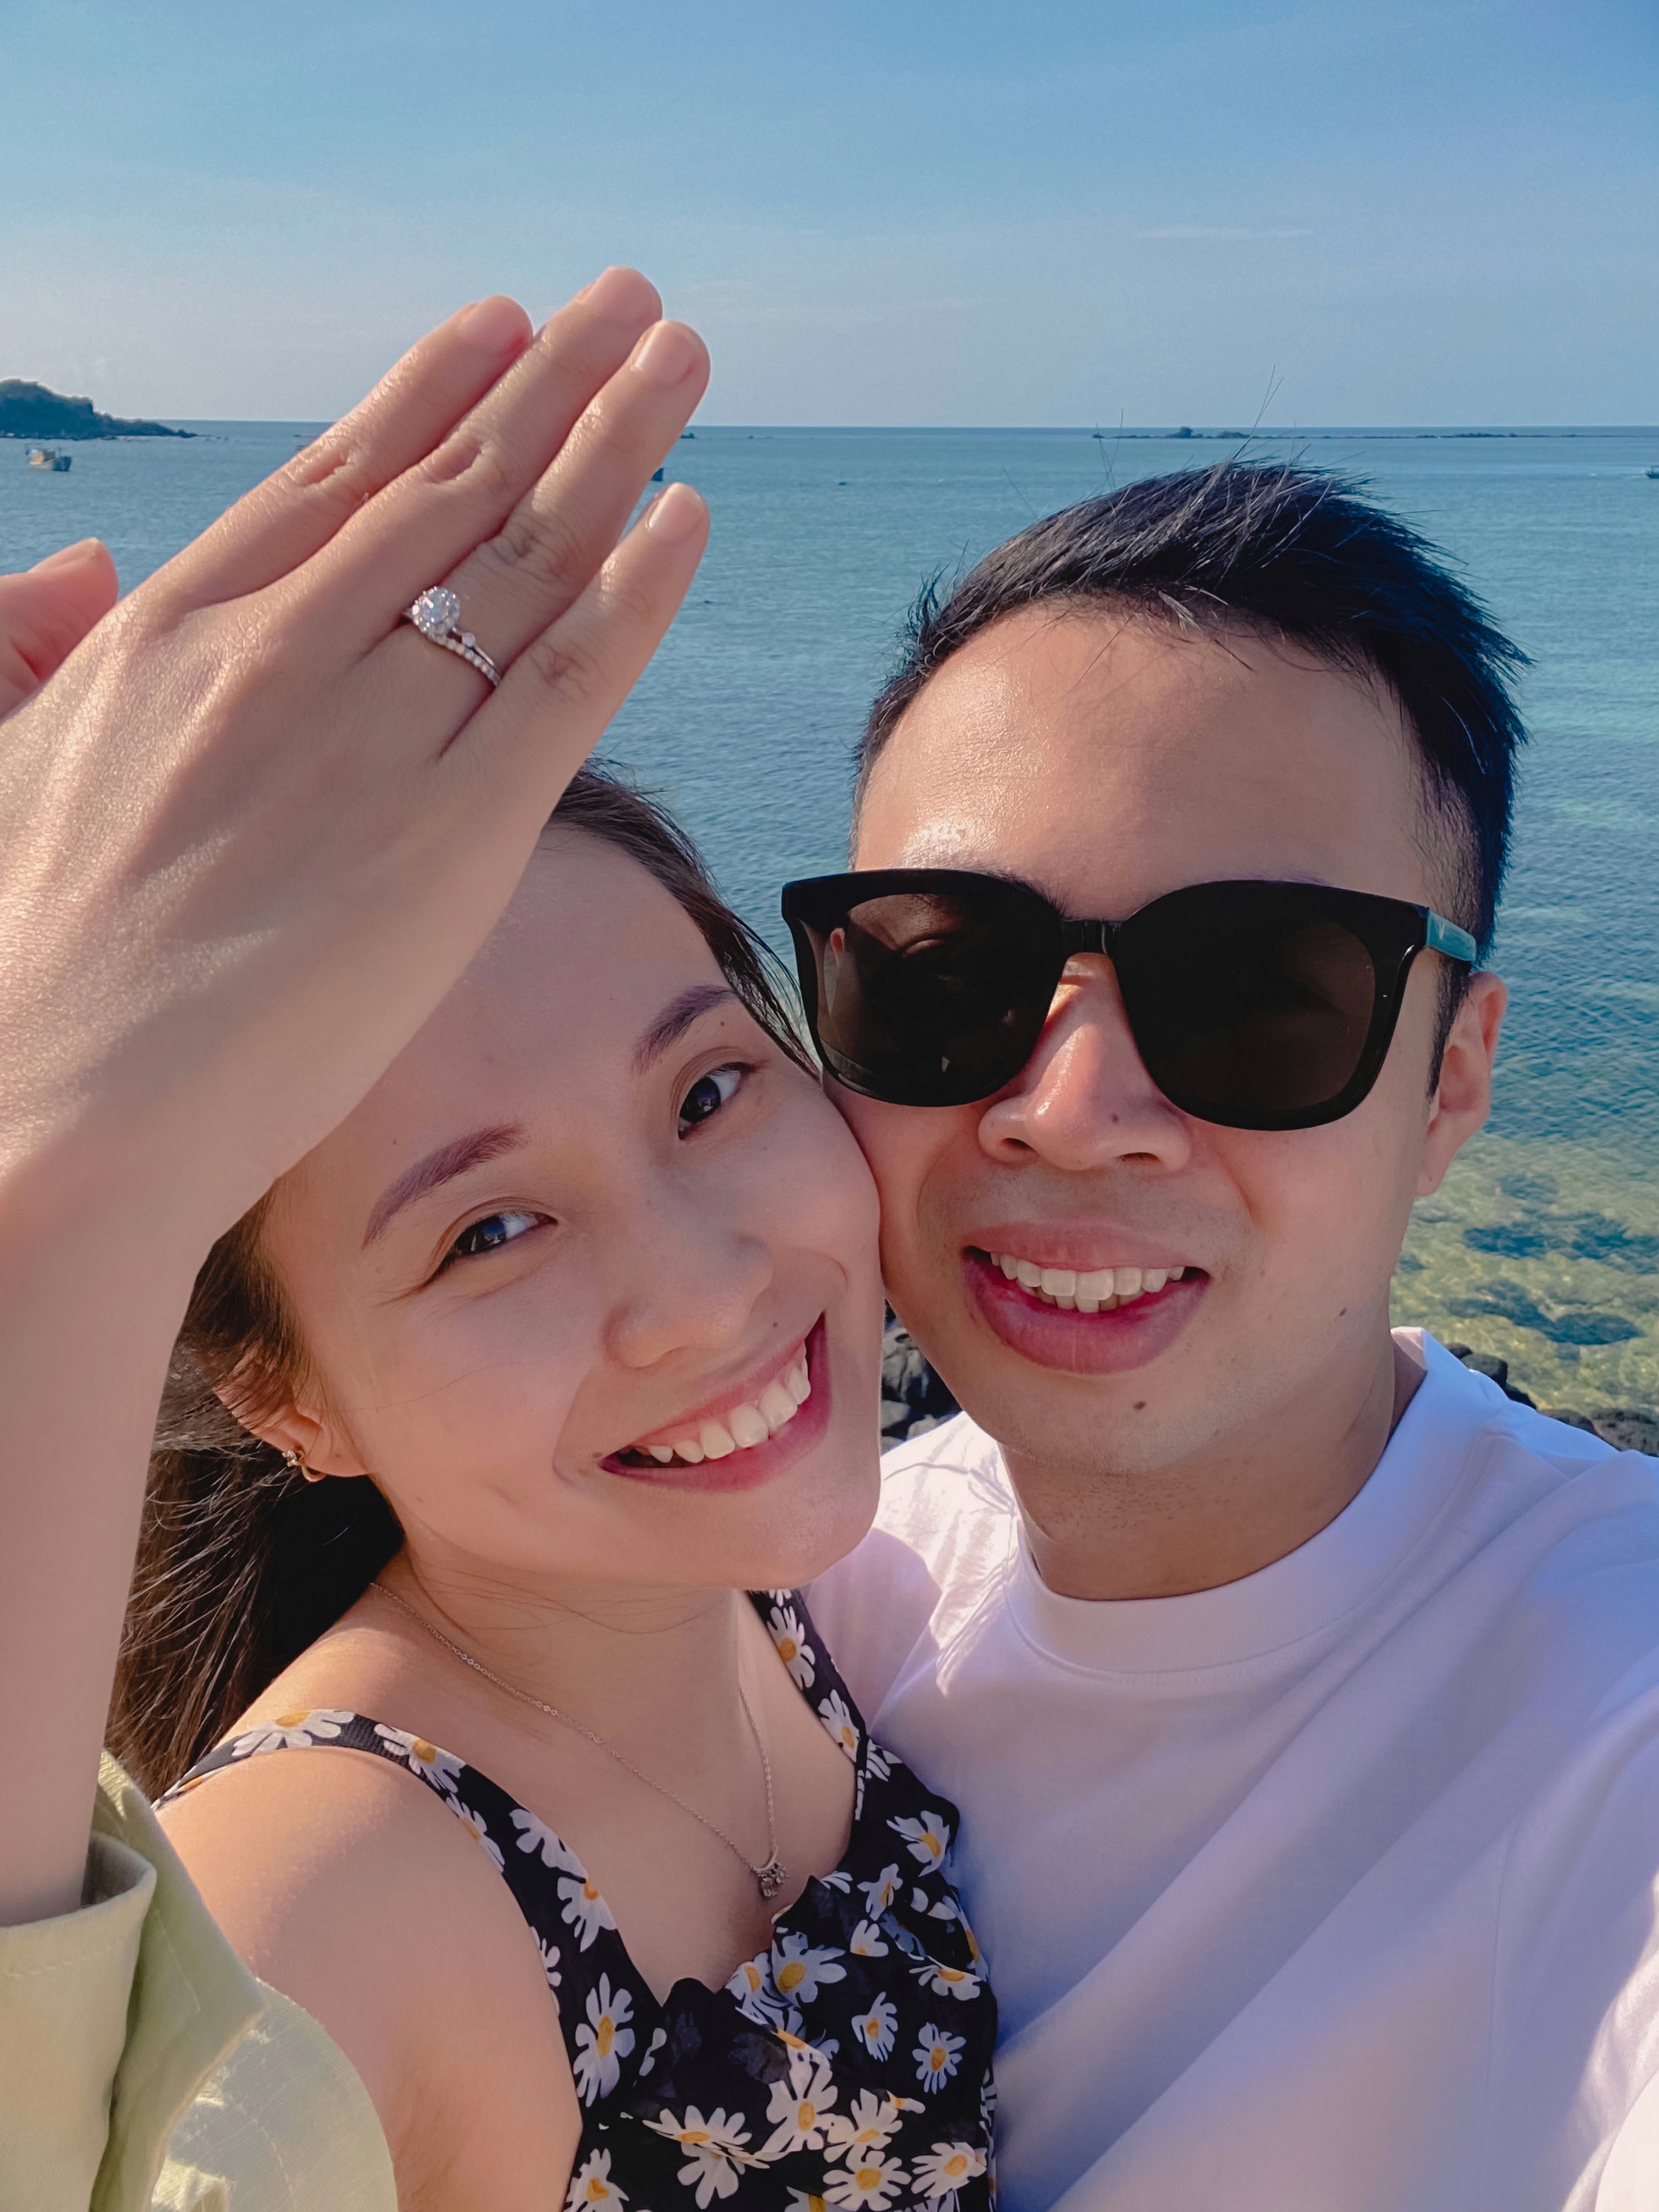 (mai) Lần đầu đi đảo Phú Quý sau dịch, cô gái Hà Nội được cầu hôn đúng khoảnh khắc hoàng hôn ở vịnh Triều Dương - Ảnh 10.